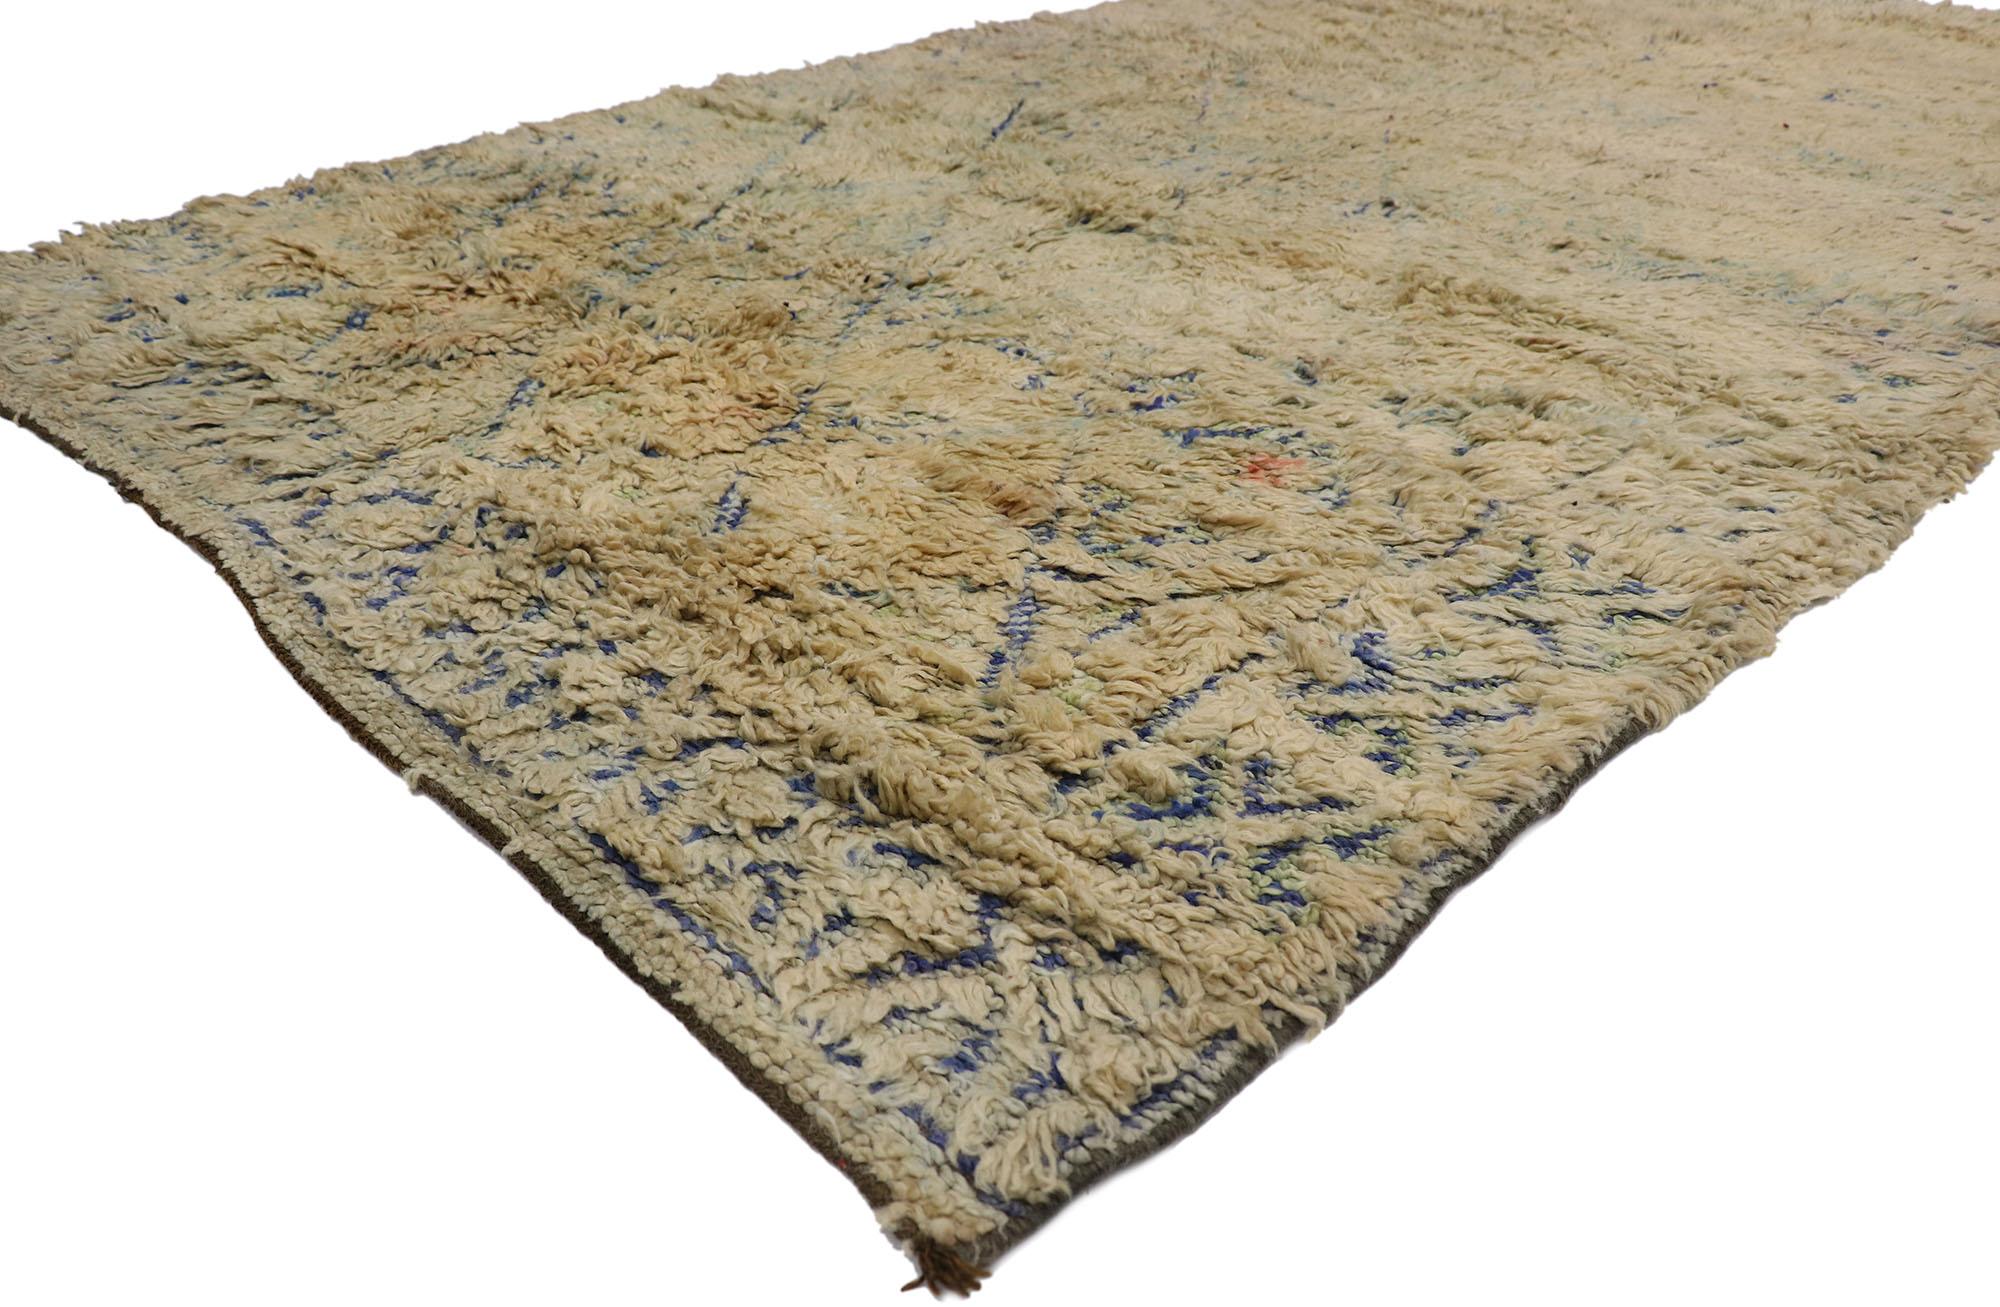 21285 Vintage Beni MGuild Marokkanischer Teppich, 05'11 x 10'02.
Boho Chic trifft auf mediterranen Stil bei diesem handgeknüpften marokkanischen Beni MGuild-Teppich aus Wolle. Das kaum sichtbare Tribal-Muster und die sanften, gedeckten Farben, die